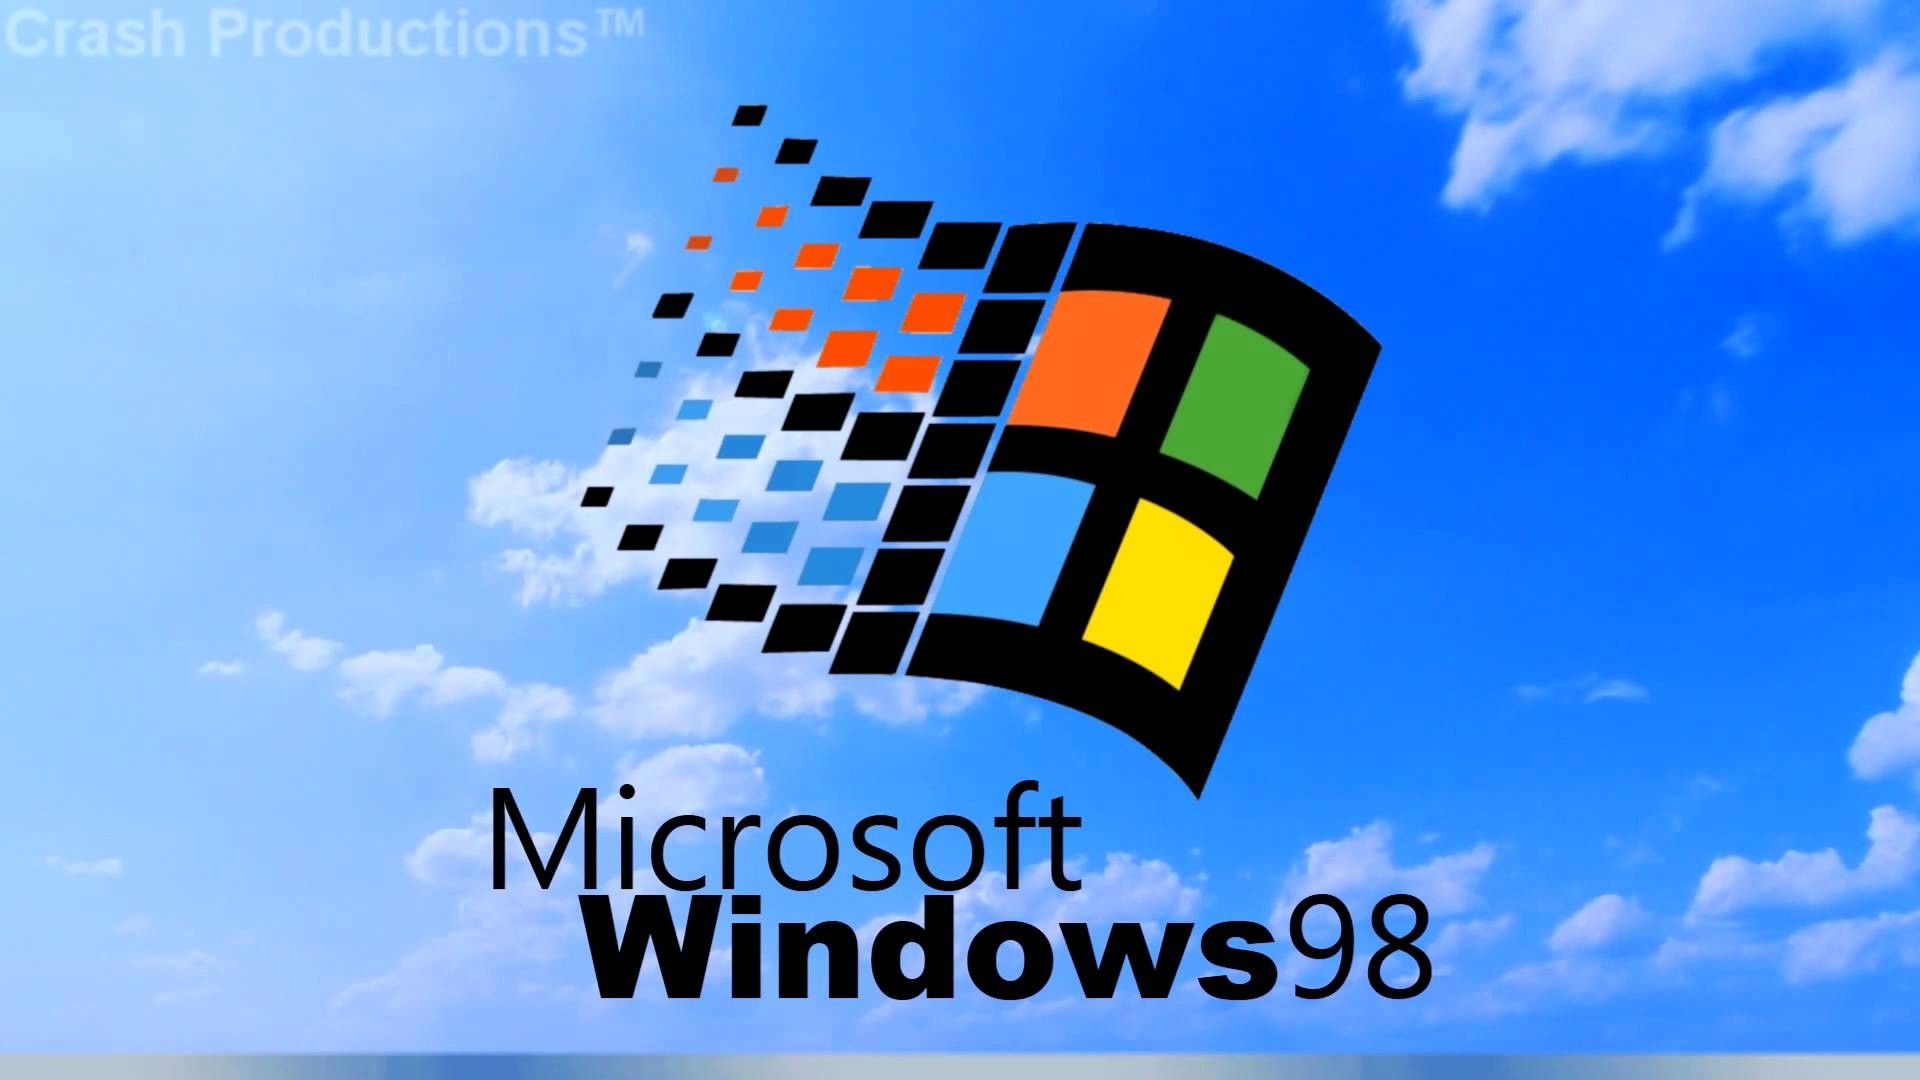 Hình ảnh của phiên bản máy tính Windows huyền thoại - Windows 98 - đã trở lại với bộ sưu tập hình nền độc đáo này! Mang một chút cổ điển vào màn hình của bạn và đừng bỏ lỡ cơ hội để khám phá những hình ảnh độc đáo và thú vị nhất. Tải về ngay bộ sưu tập Windows 98 wallpapers và cùng trải nghiệm nhé!